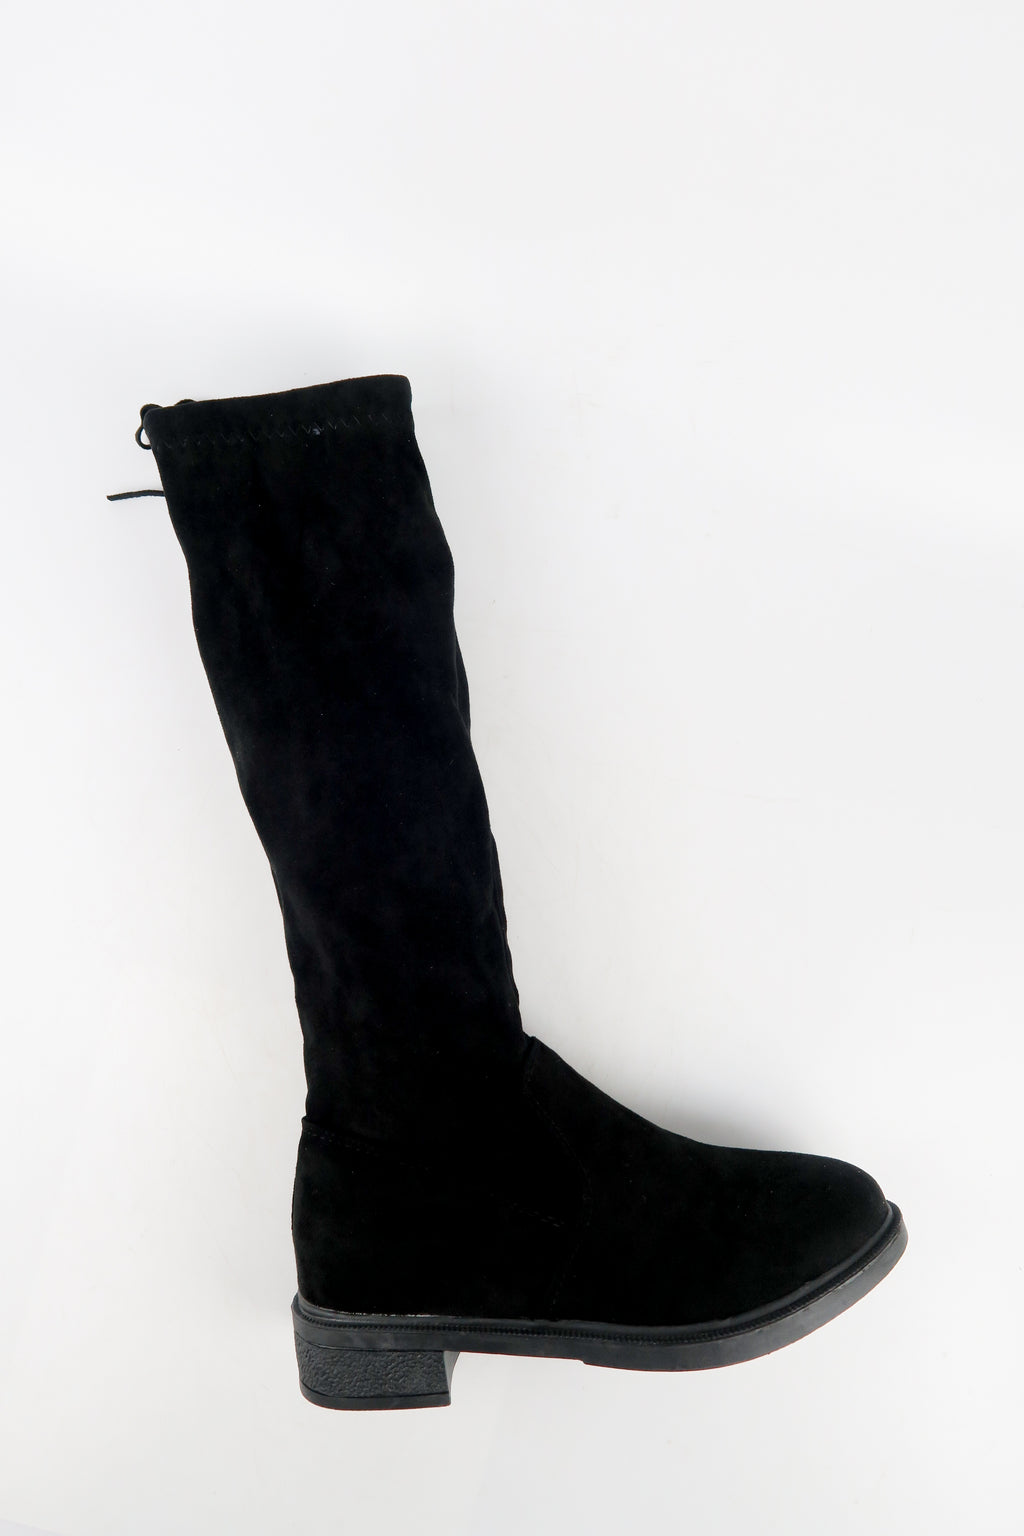 รองเท้าบูทกันหนาวทรงสูง กำมะหยี่ สีดำ  - Ladies Winter Knee High Suede Long Boots